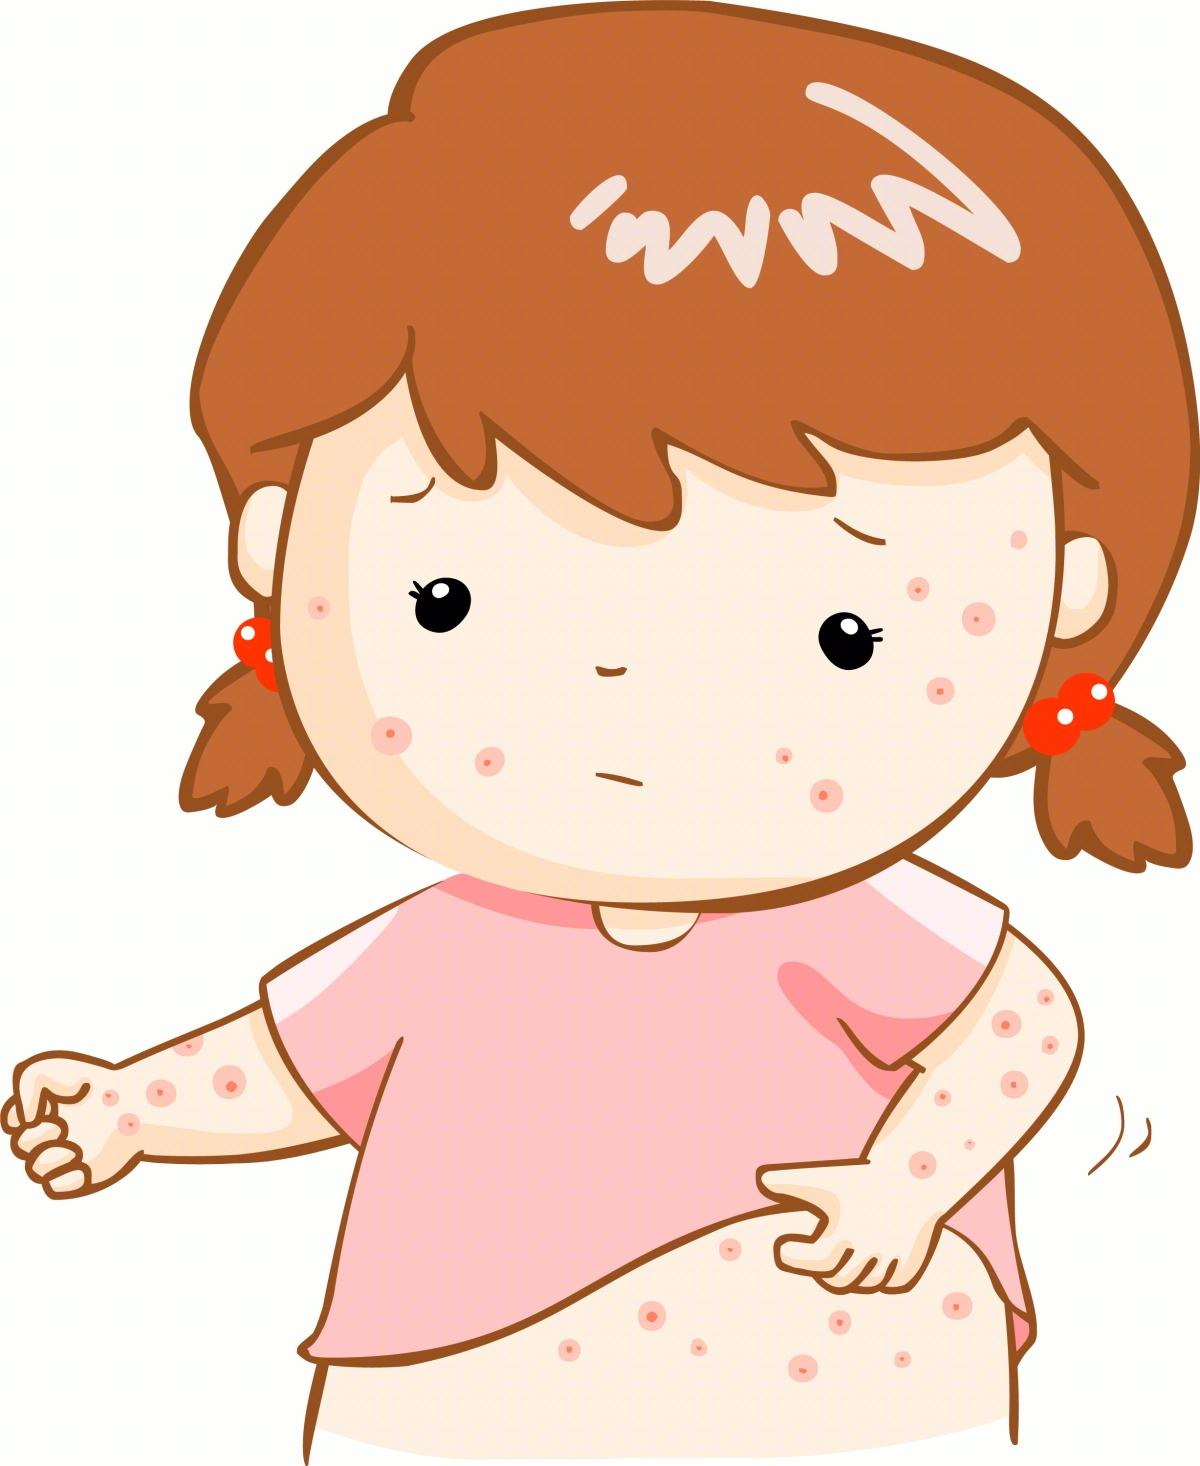 水痘的症状和治疗 一般几天能好 - 美容护肤 - 蓝灵育儿网